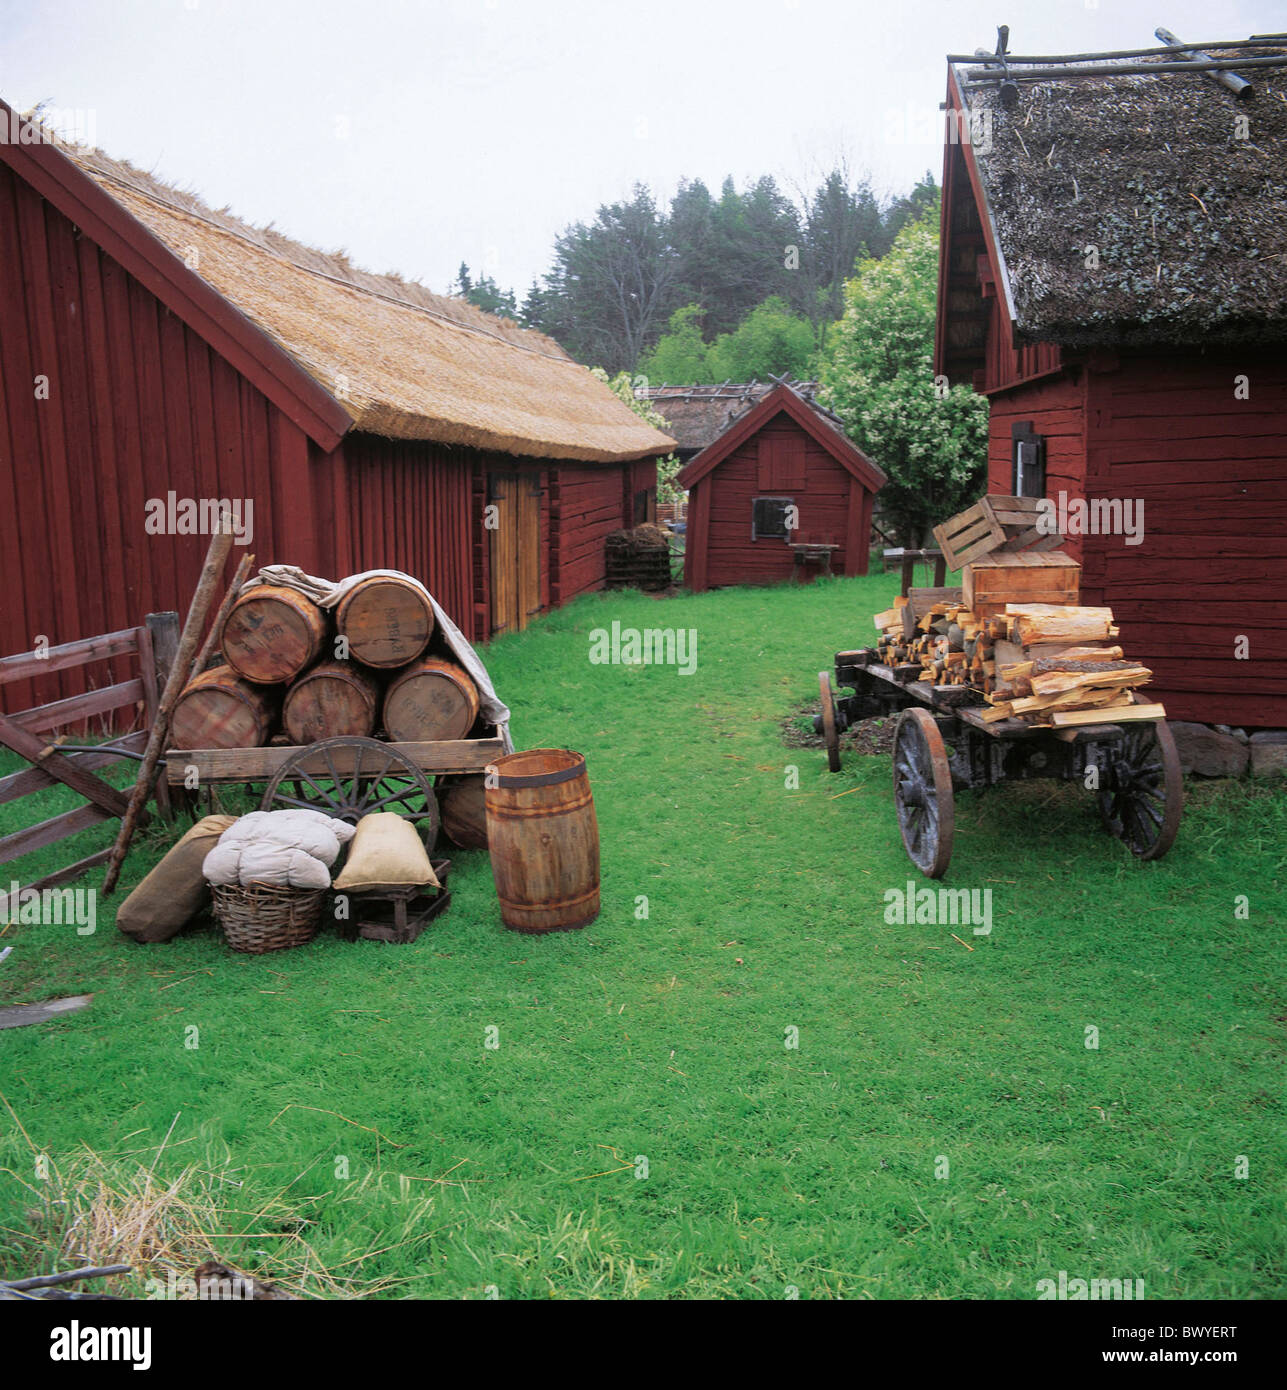 Village de barils maisons maisons maisons bois historiques chariots abris toit de roseau Suède Europe settlement sigt Banque D'Images